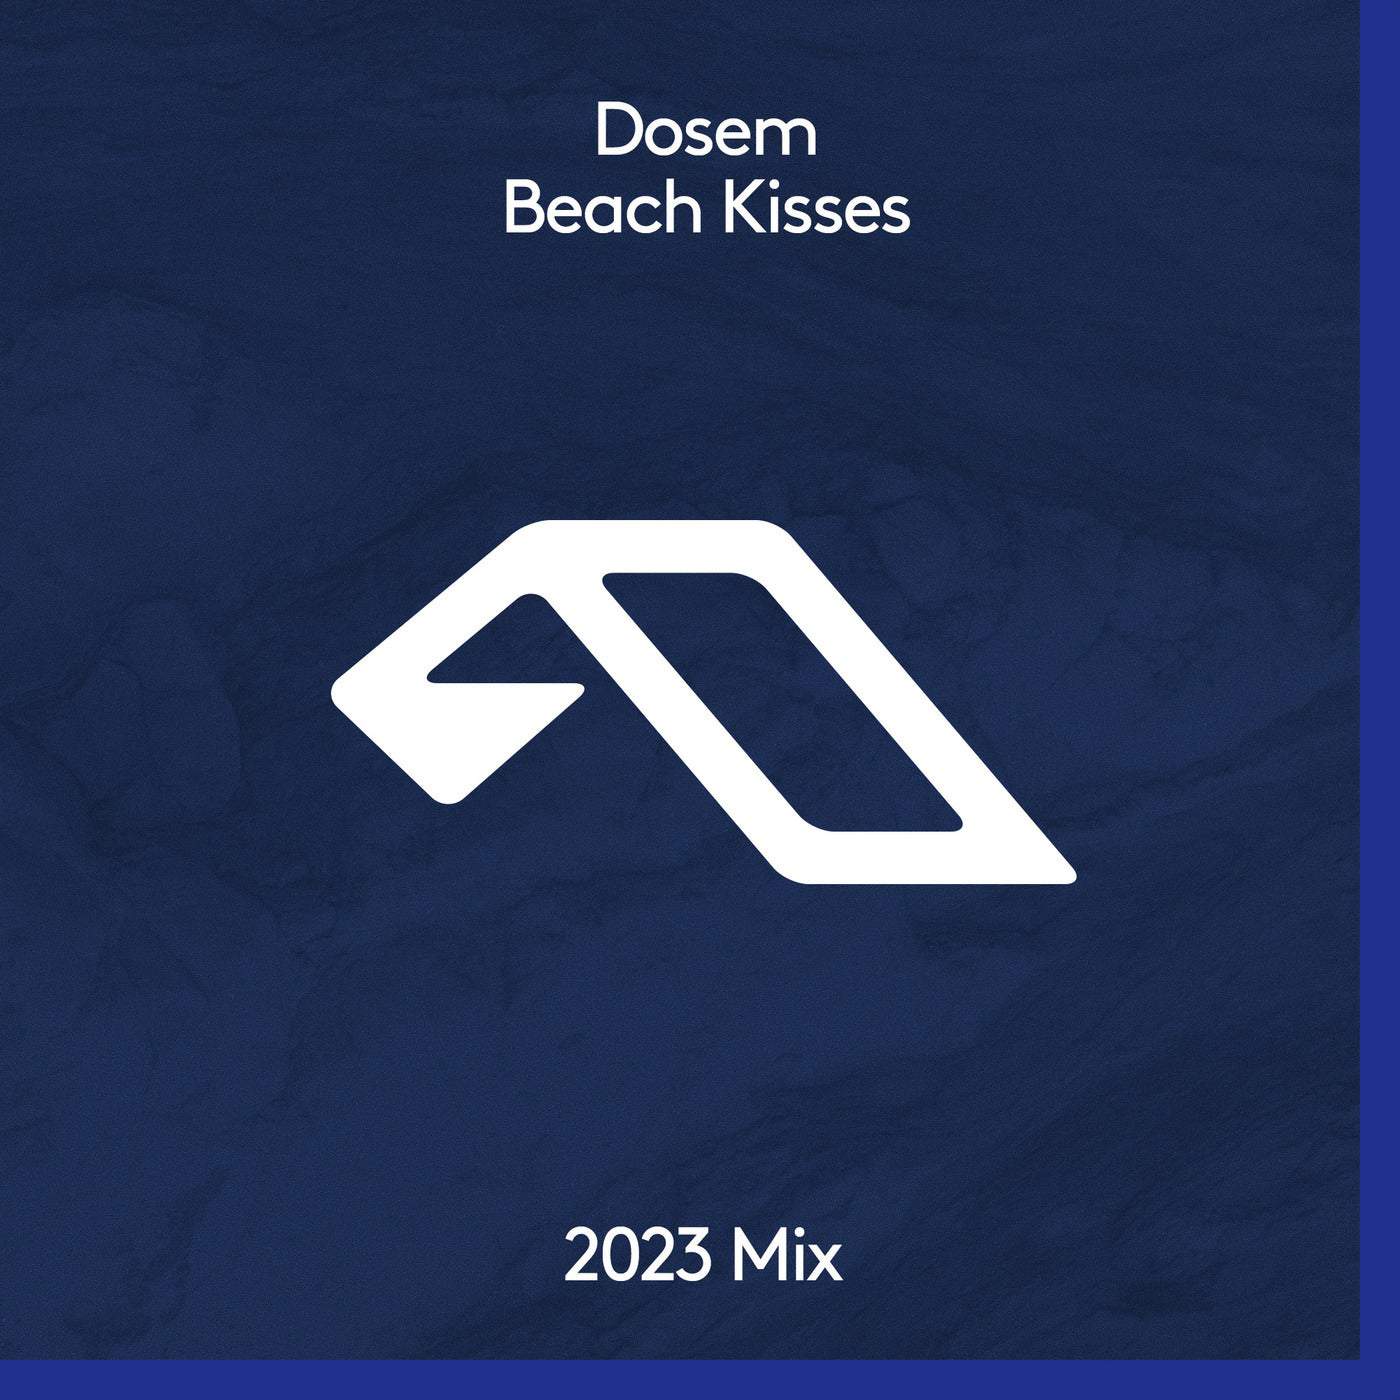 11 2023 346 091216415 Beach Kisses (2023 Mix) On Anjunadeep » Electrobuzz